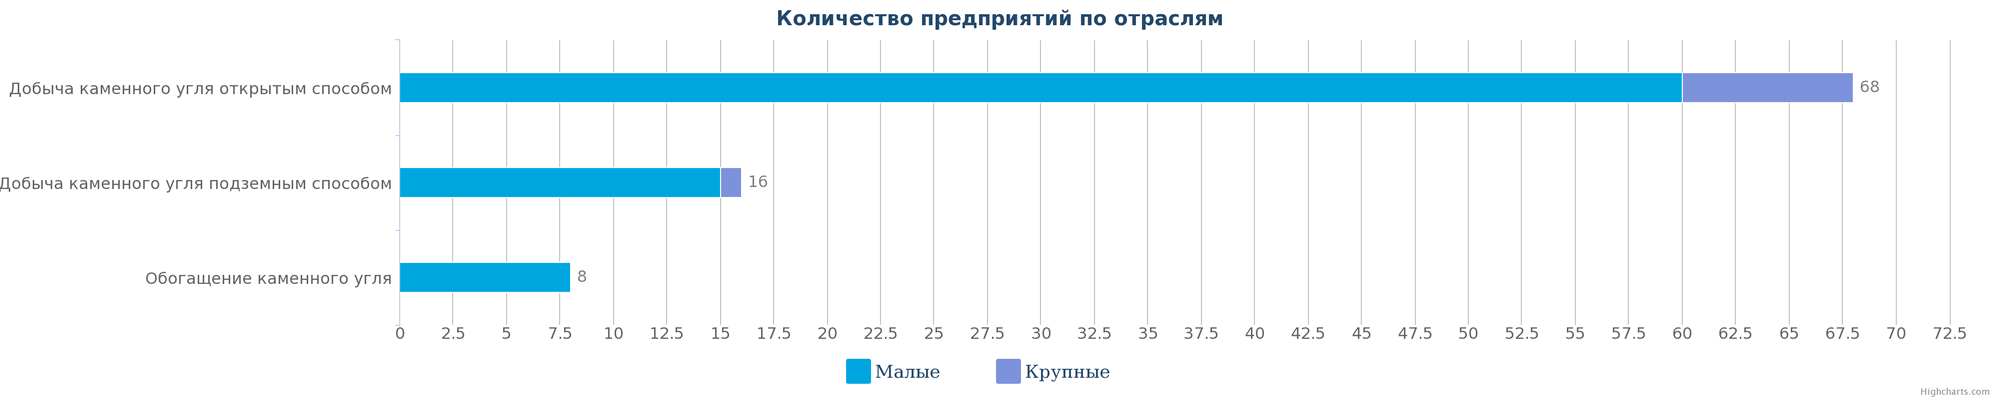 Количество компаний, занимающиеся добычей каменного угля в Казахстане по видам деятельности